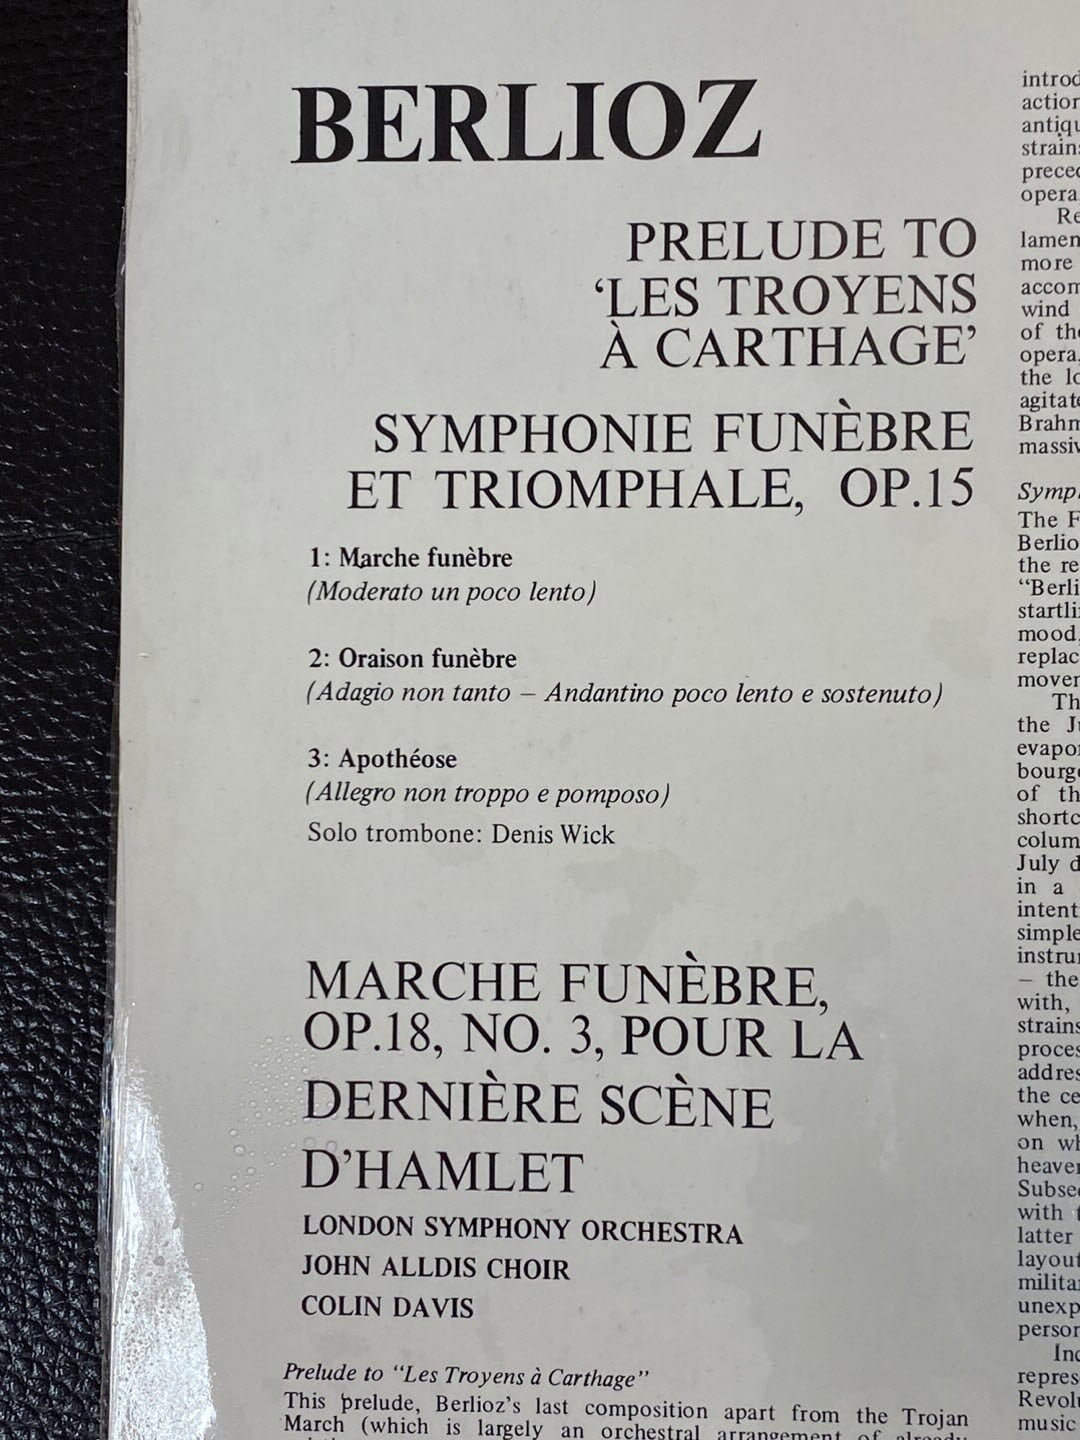 [LP] 콜린 데이비스 - Colin Davis - Berlioz Symphonie Funebre Et Triomphale LP [홀랜드반]